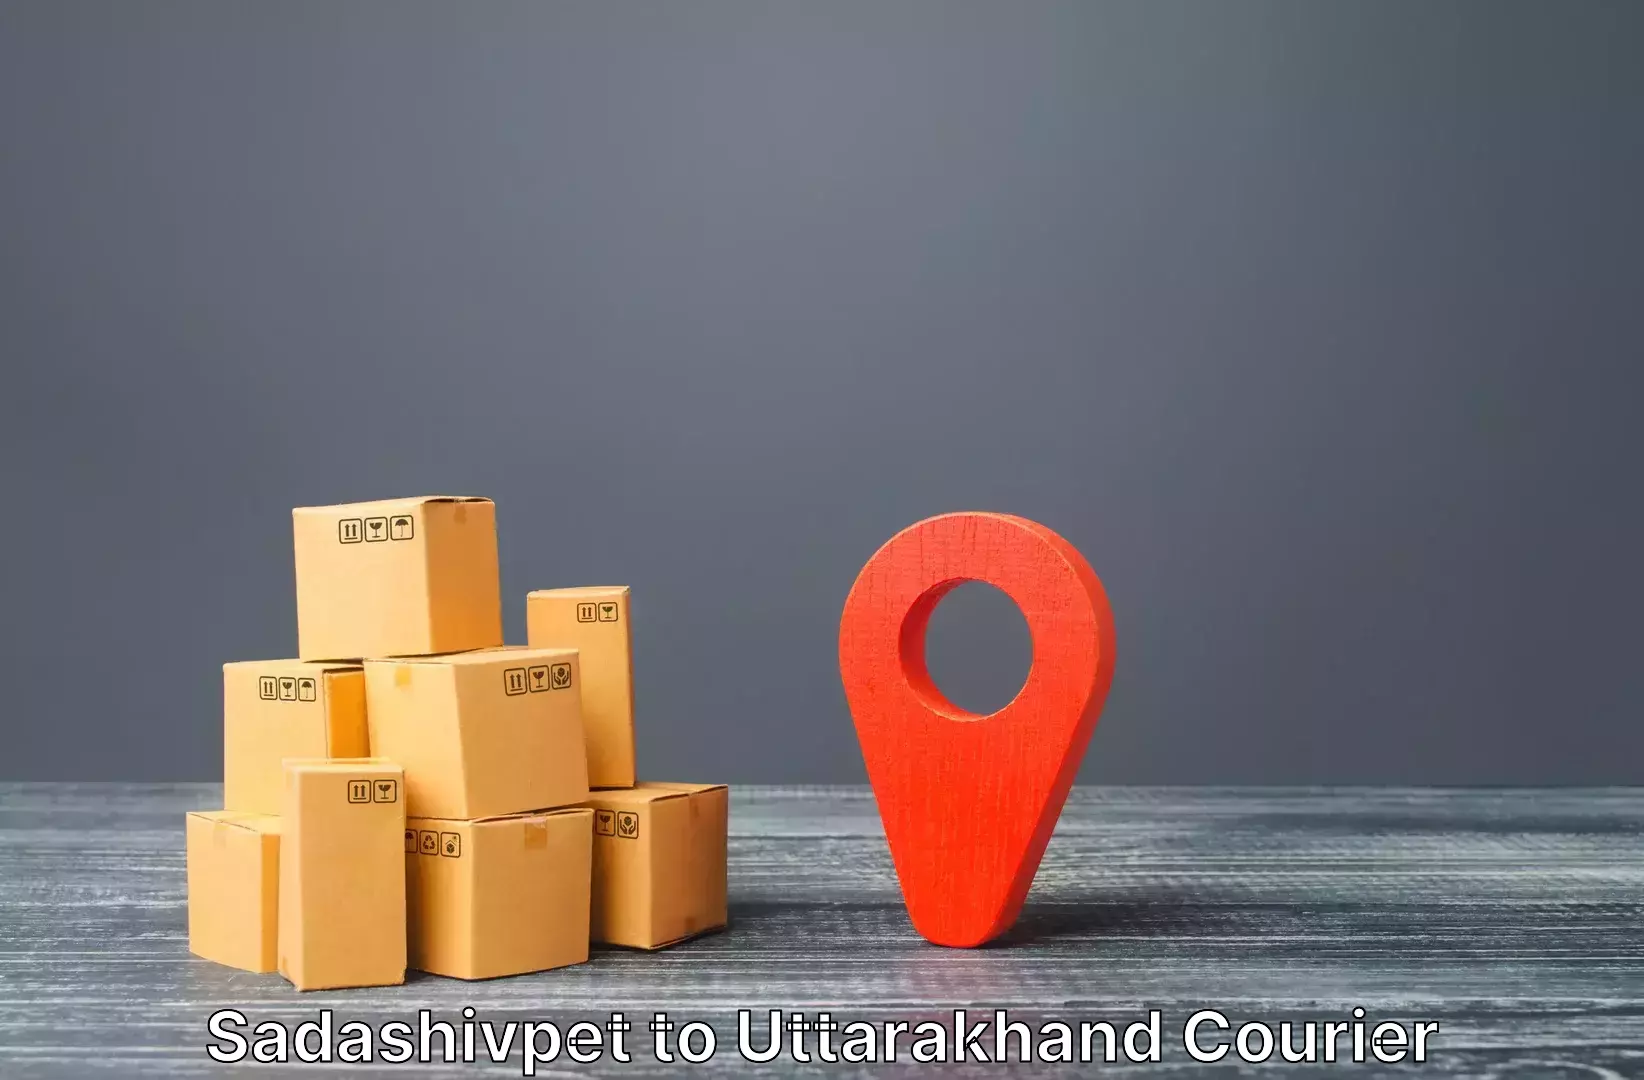 Baggage transport logistics Sadashivpet to Uttarakhand